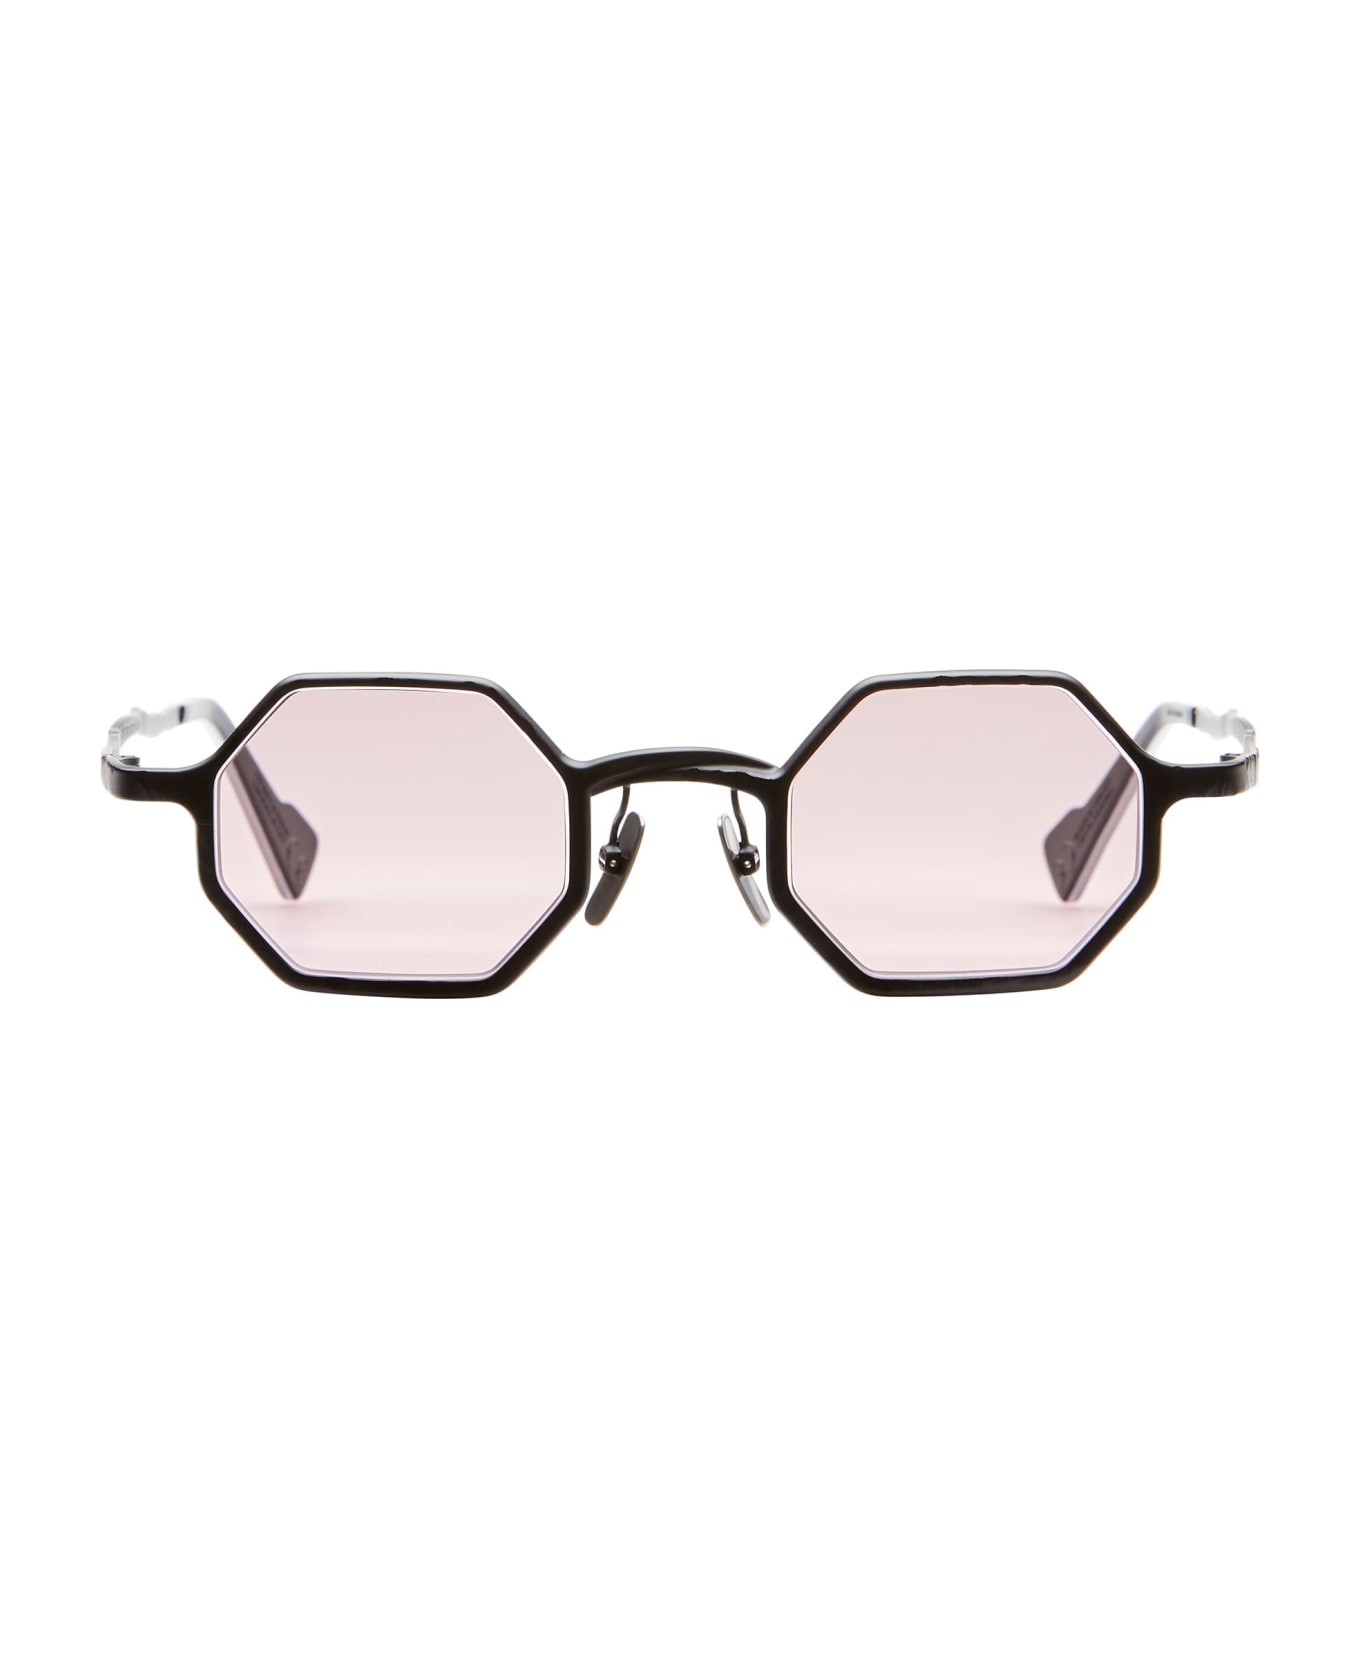 Kuboraum Mask Z19 - Black Matte Sunglasses - Silver